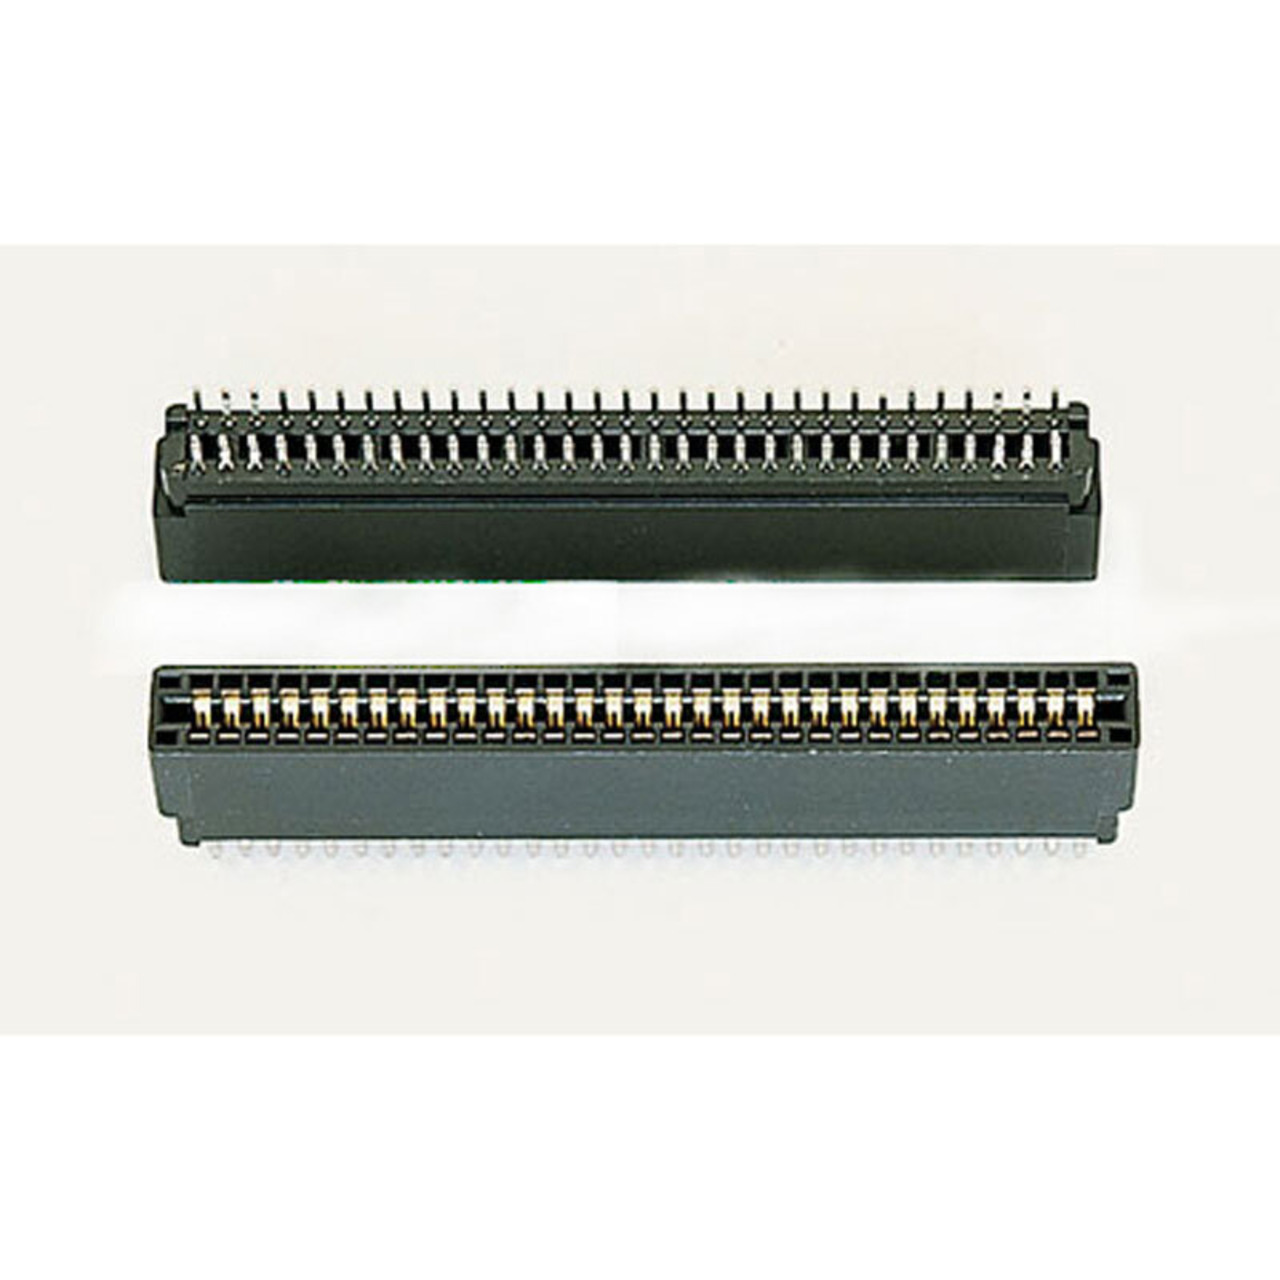 Slot-Stecker- Rastermass: 2-54 mm- 2 x 18-polig unter Komponenten